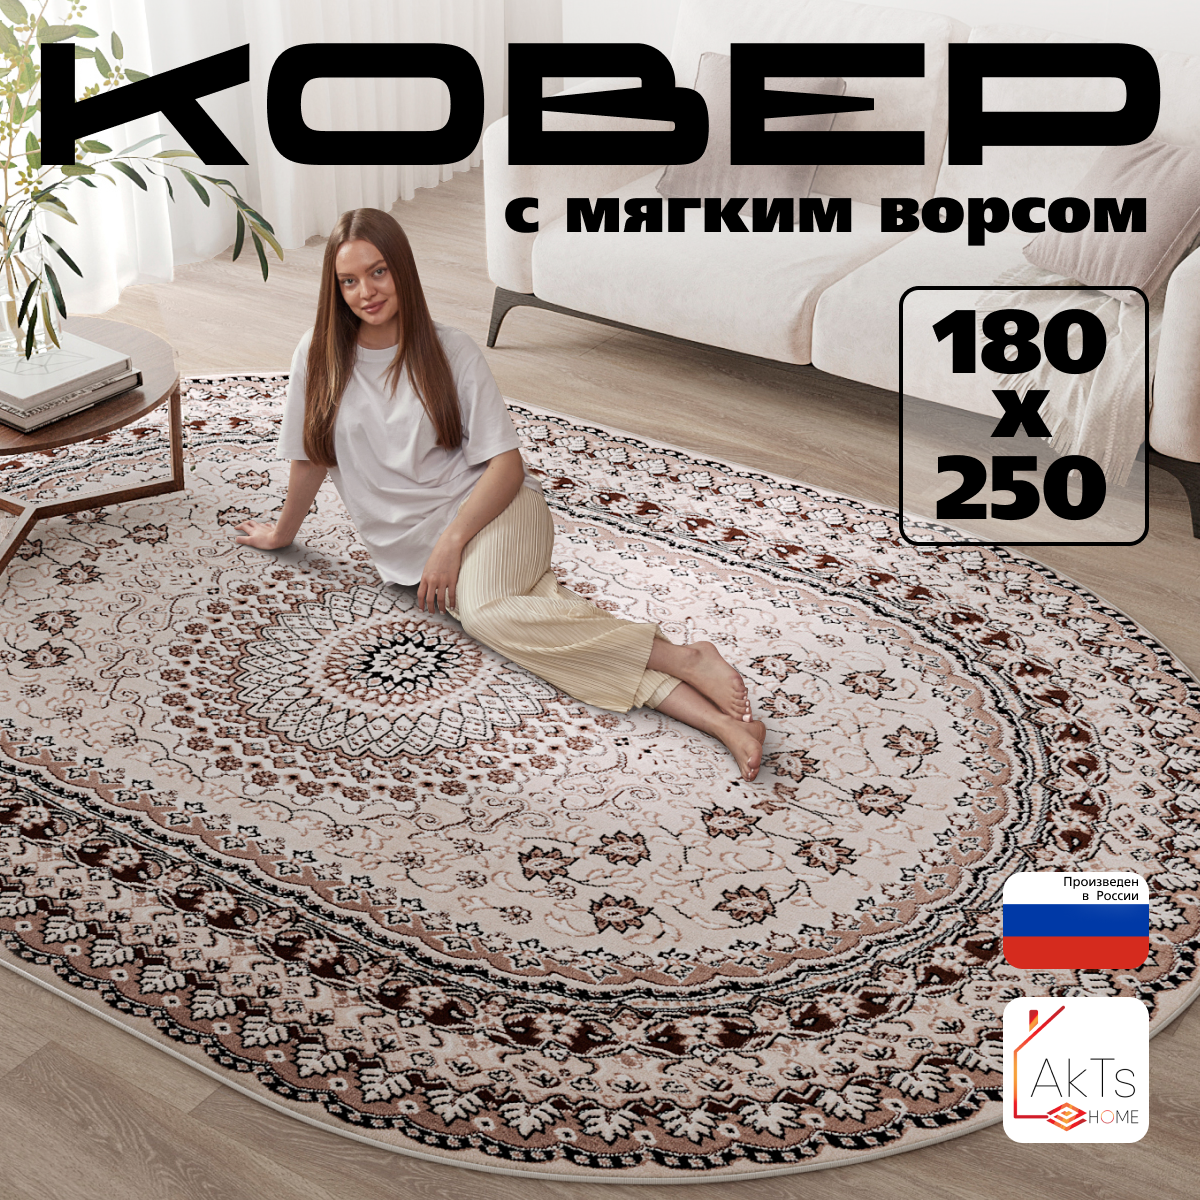 Российский овальный ковер на пол 180 на 250 см в гостиную, зал, спальню, кухню, детскую, прихожую, кабинет, комнату